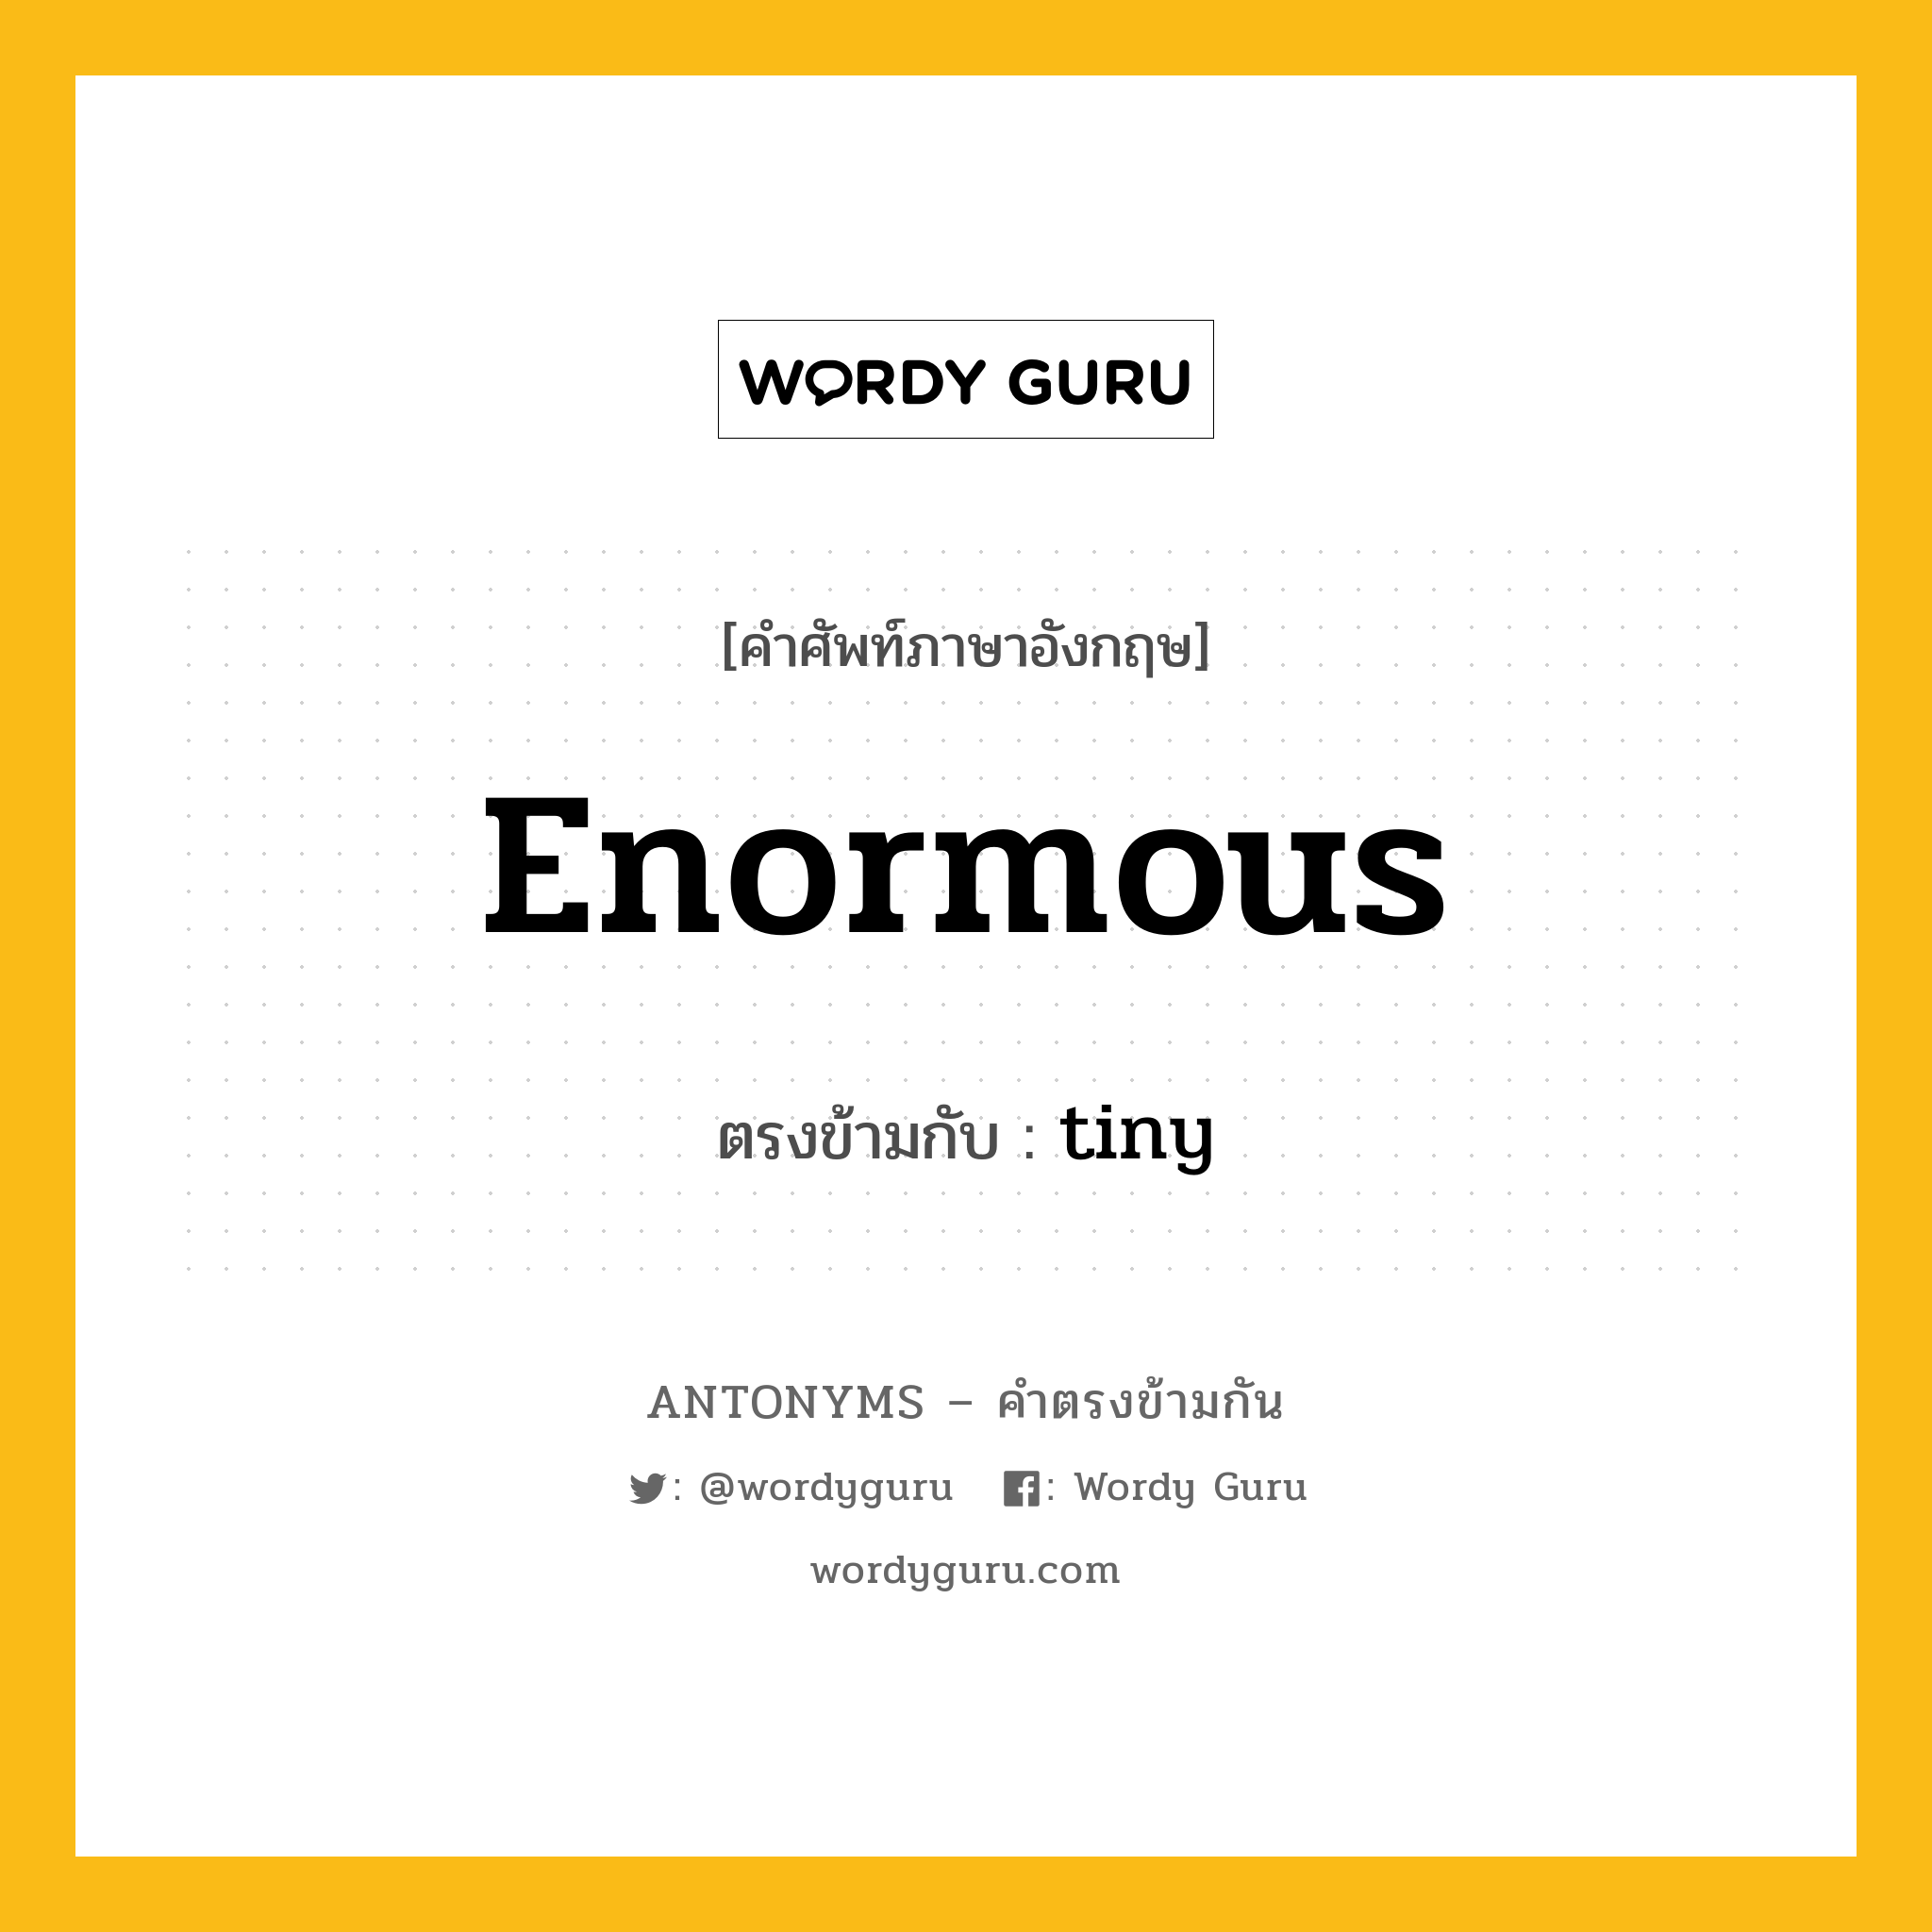 enormous เป็นคำตรงข้ามกับคำไหนบ้าง?, คำศัพท์ภาษาอังกฤษ enormous ตรงข้ามกับ tiny หมวด tiny